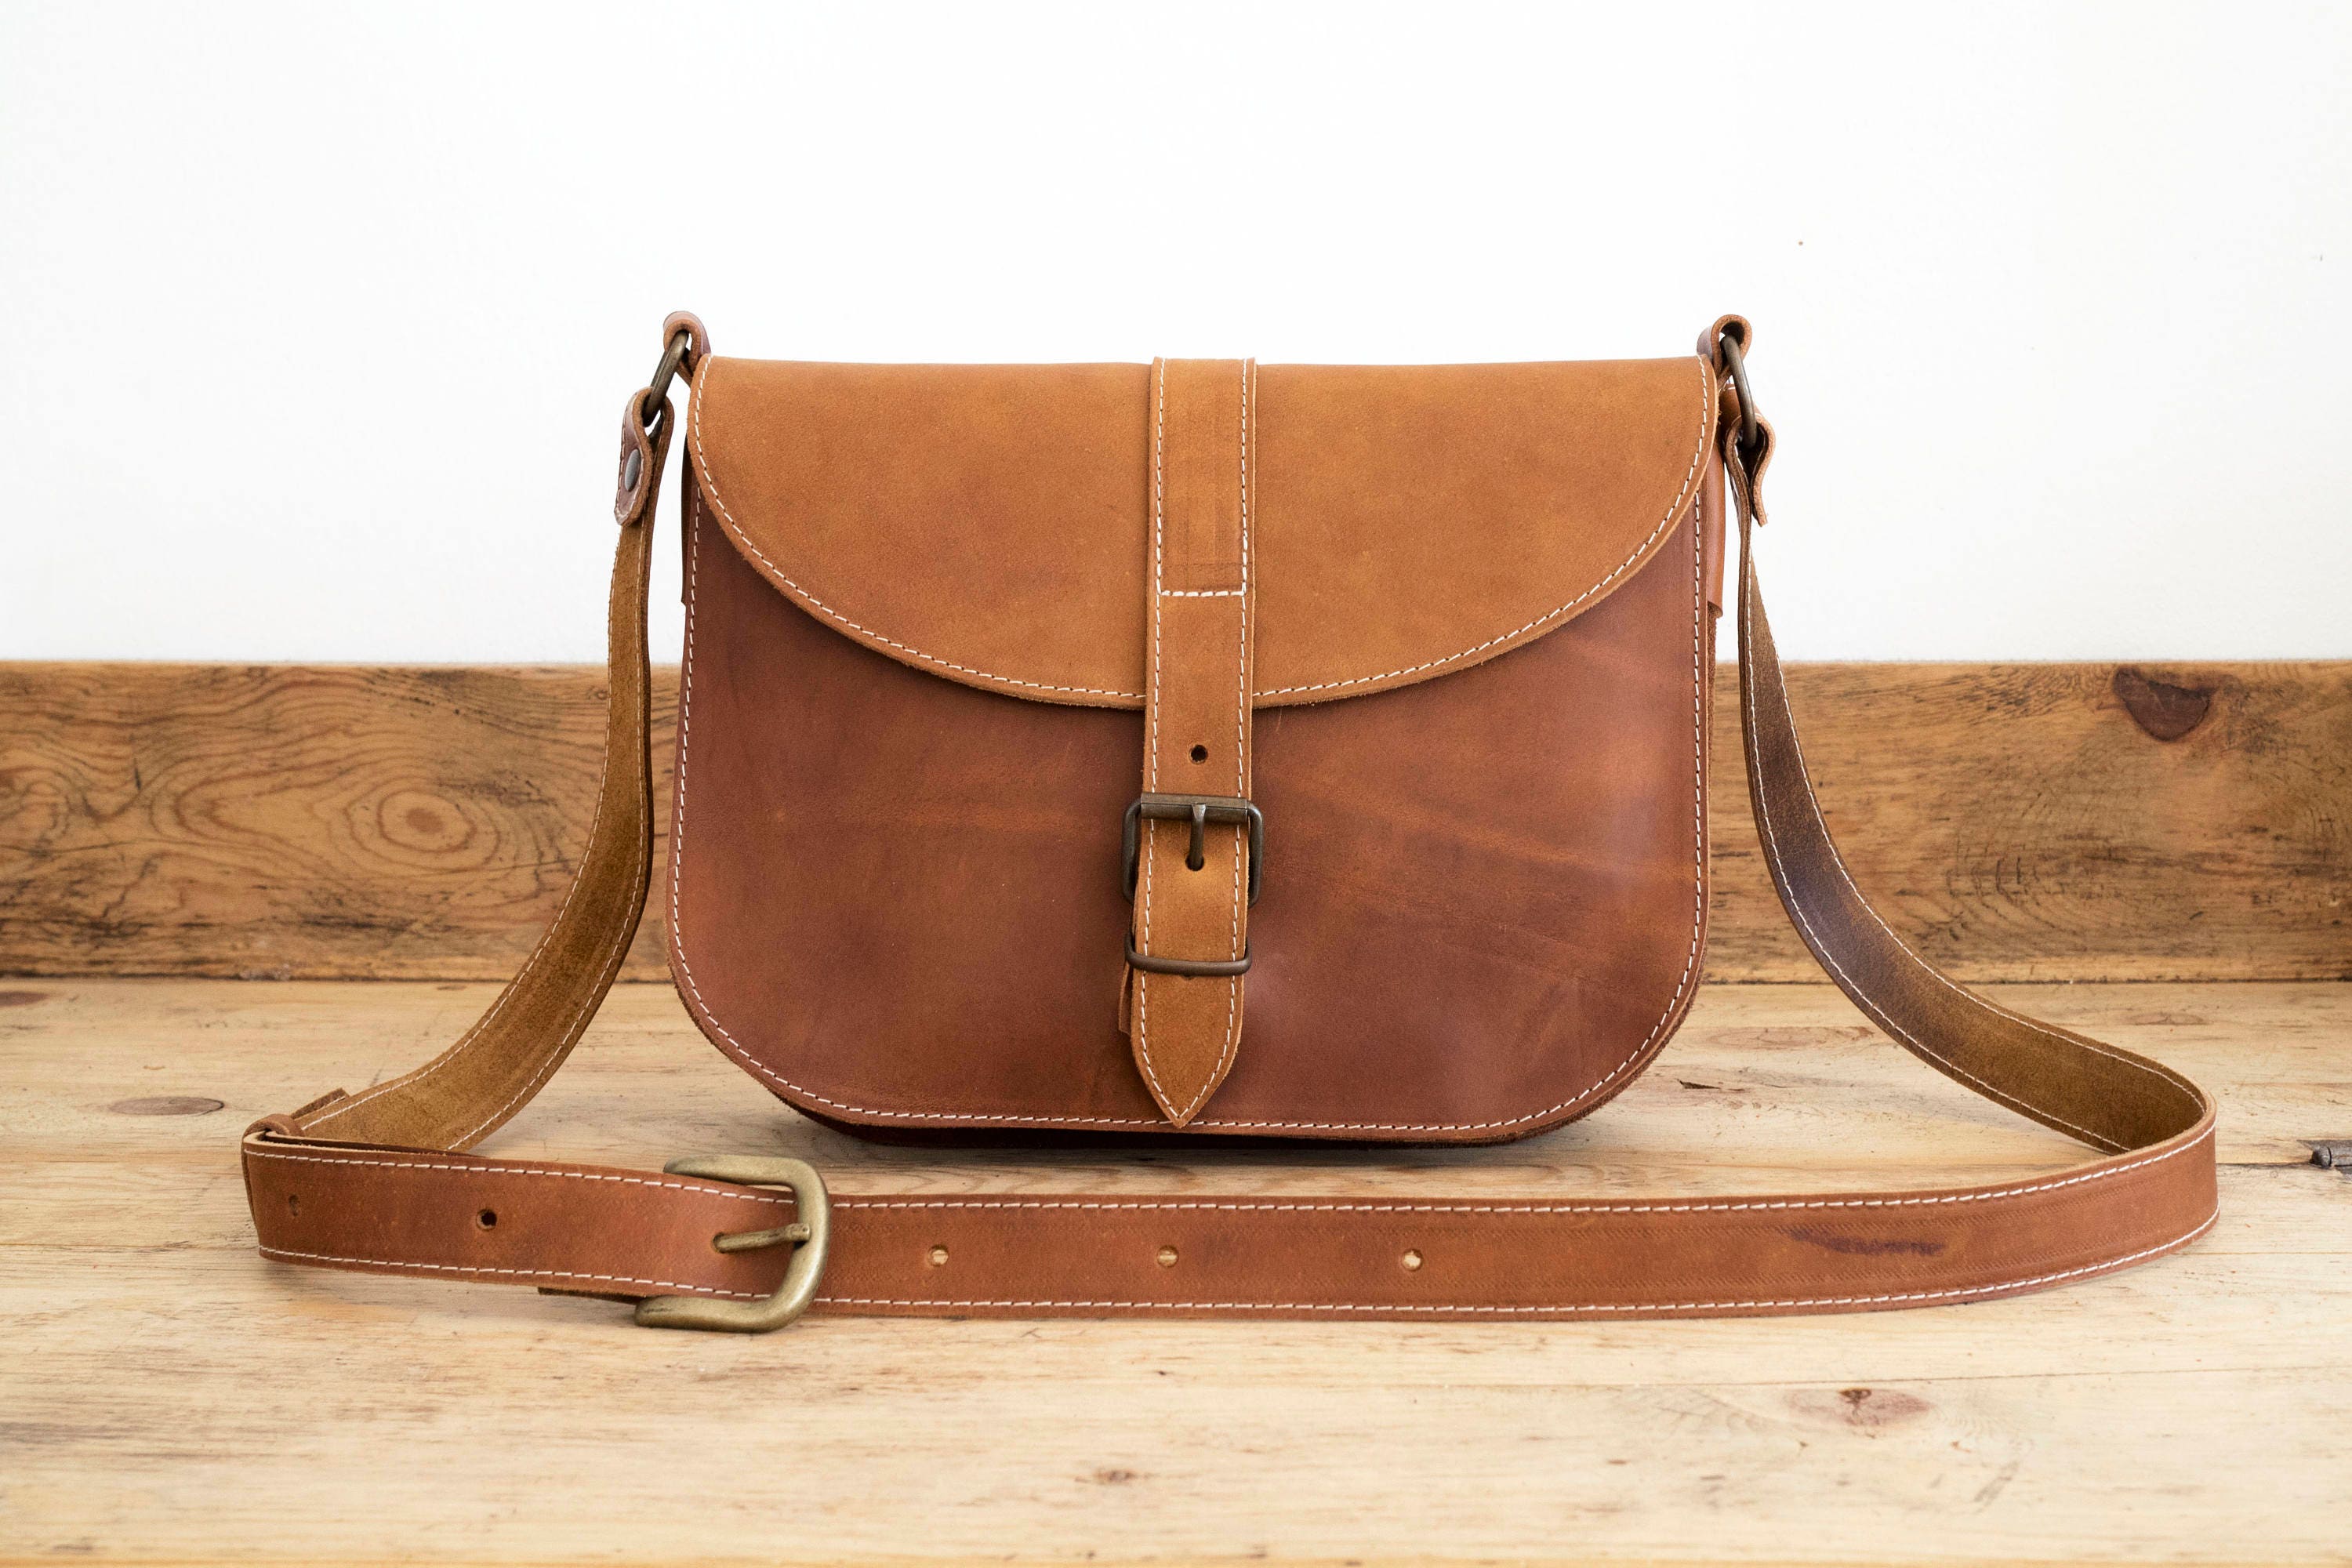 MESSENGER BAG // Brown leather bag // Satchel Leather handbag | Etsy